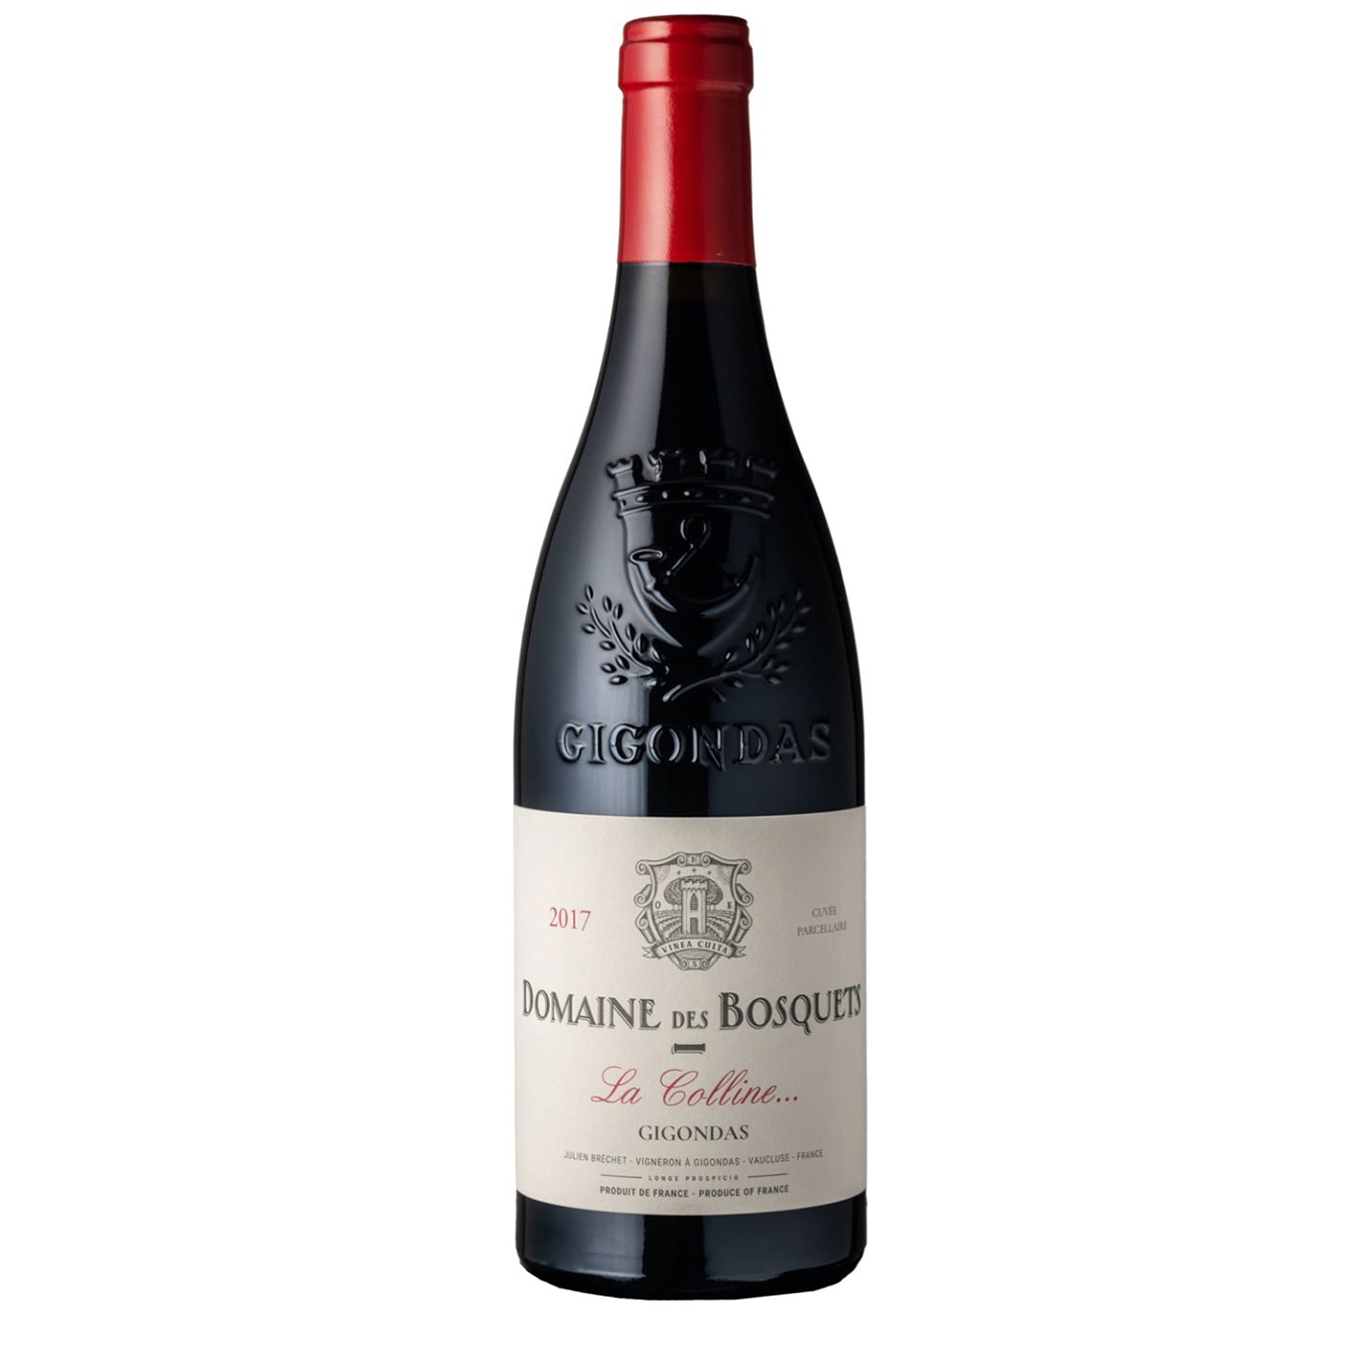 Domaine Des Bosquets Gigondas La Colline 2017 Red Wine